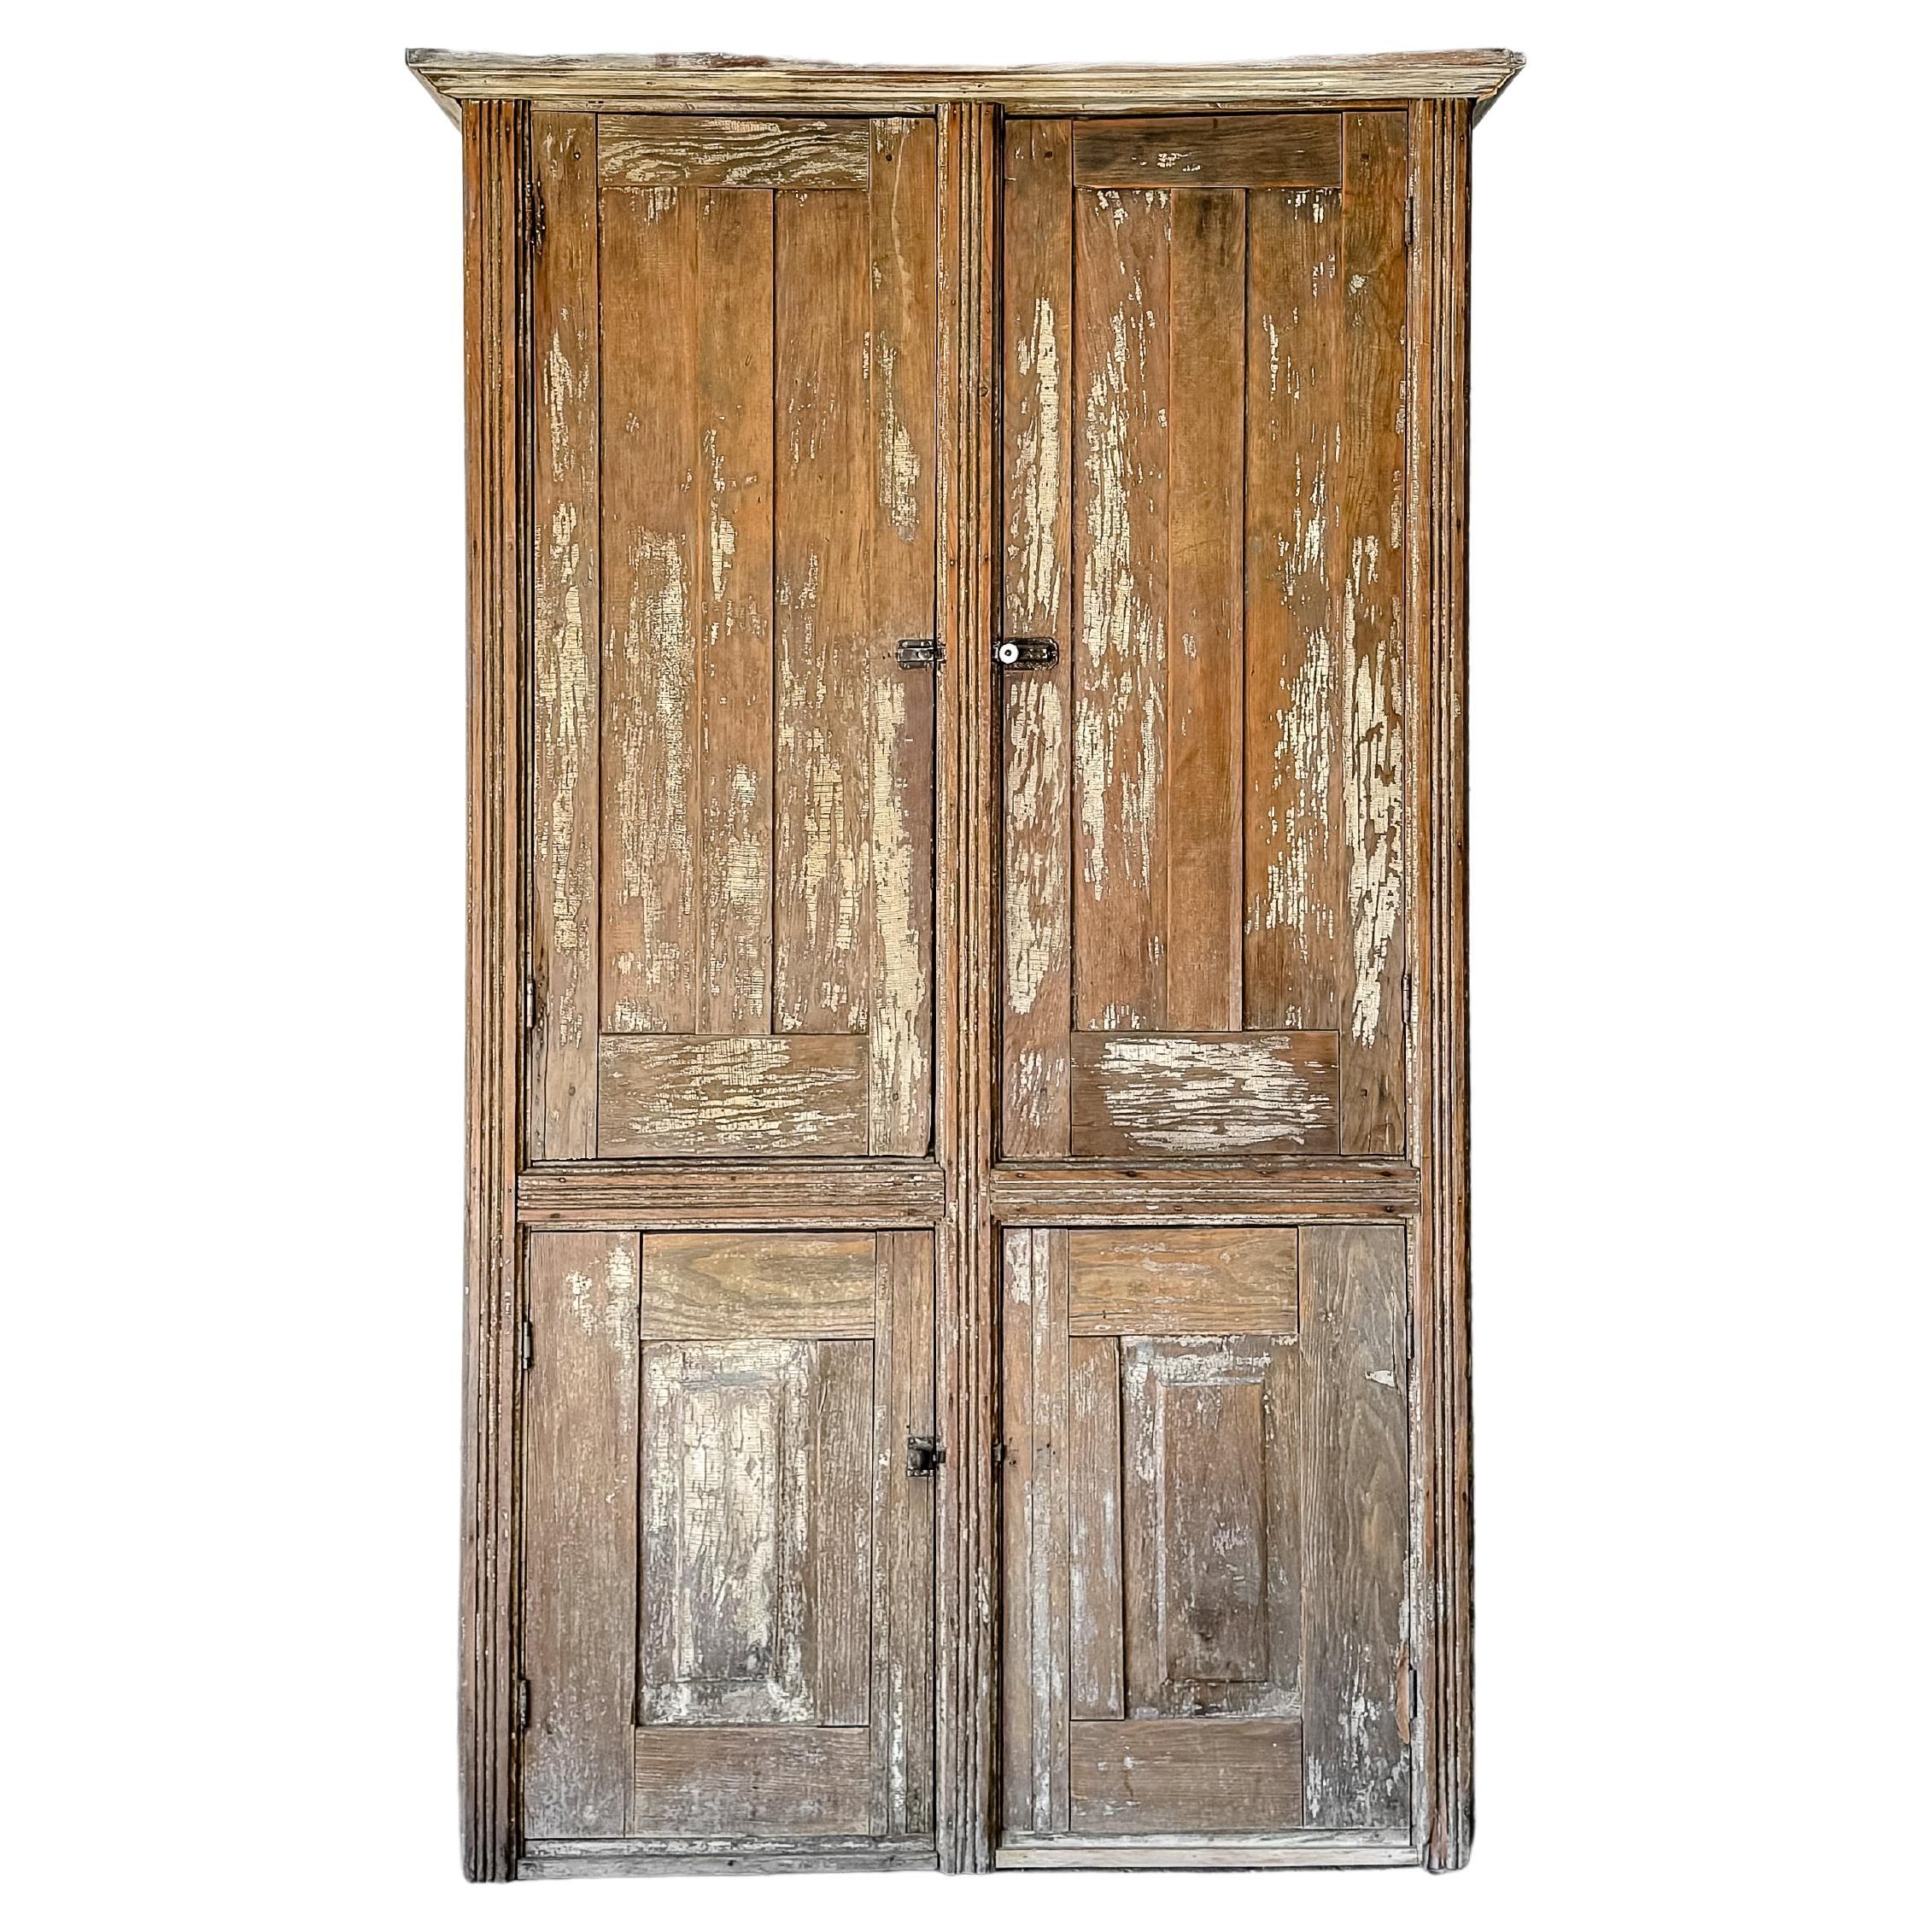 Antique Primitive 4 Door Cupboard with Worn Paint